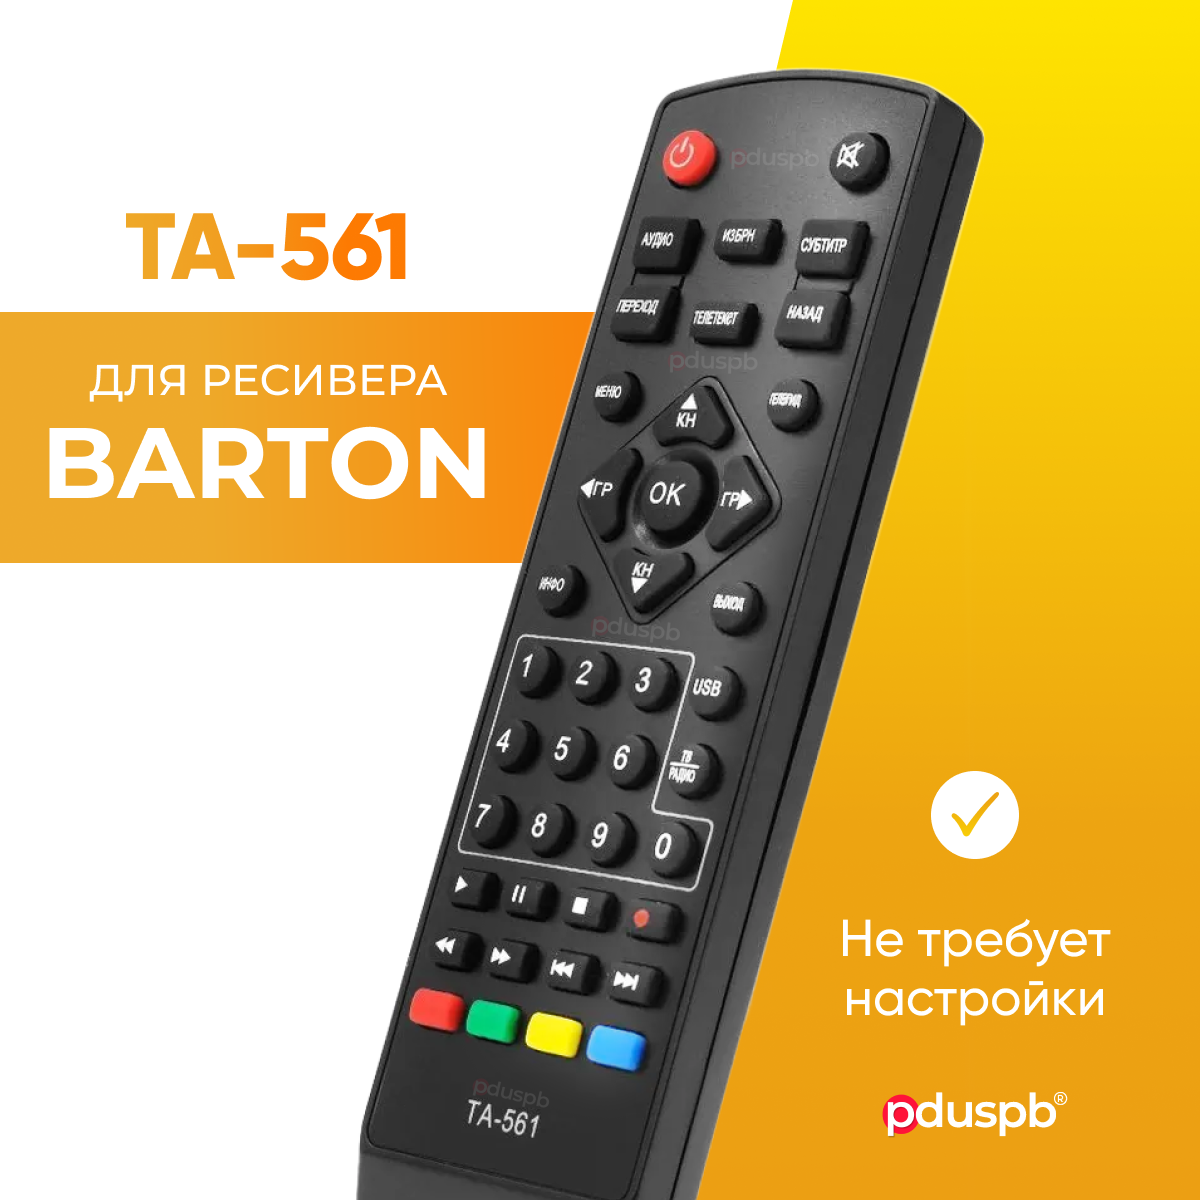 Пульт дистанционного управления (ду) TA-561 для DVB-T2 ресивера BARTON